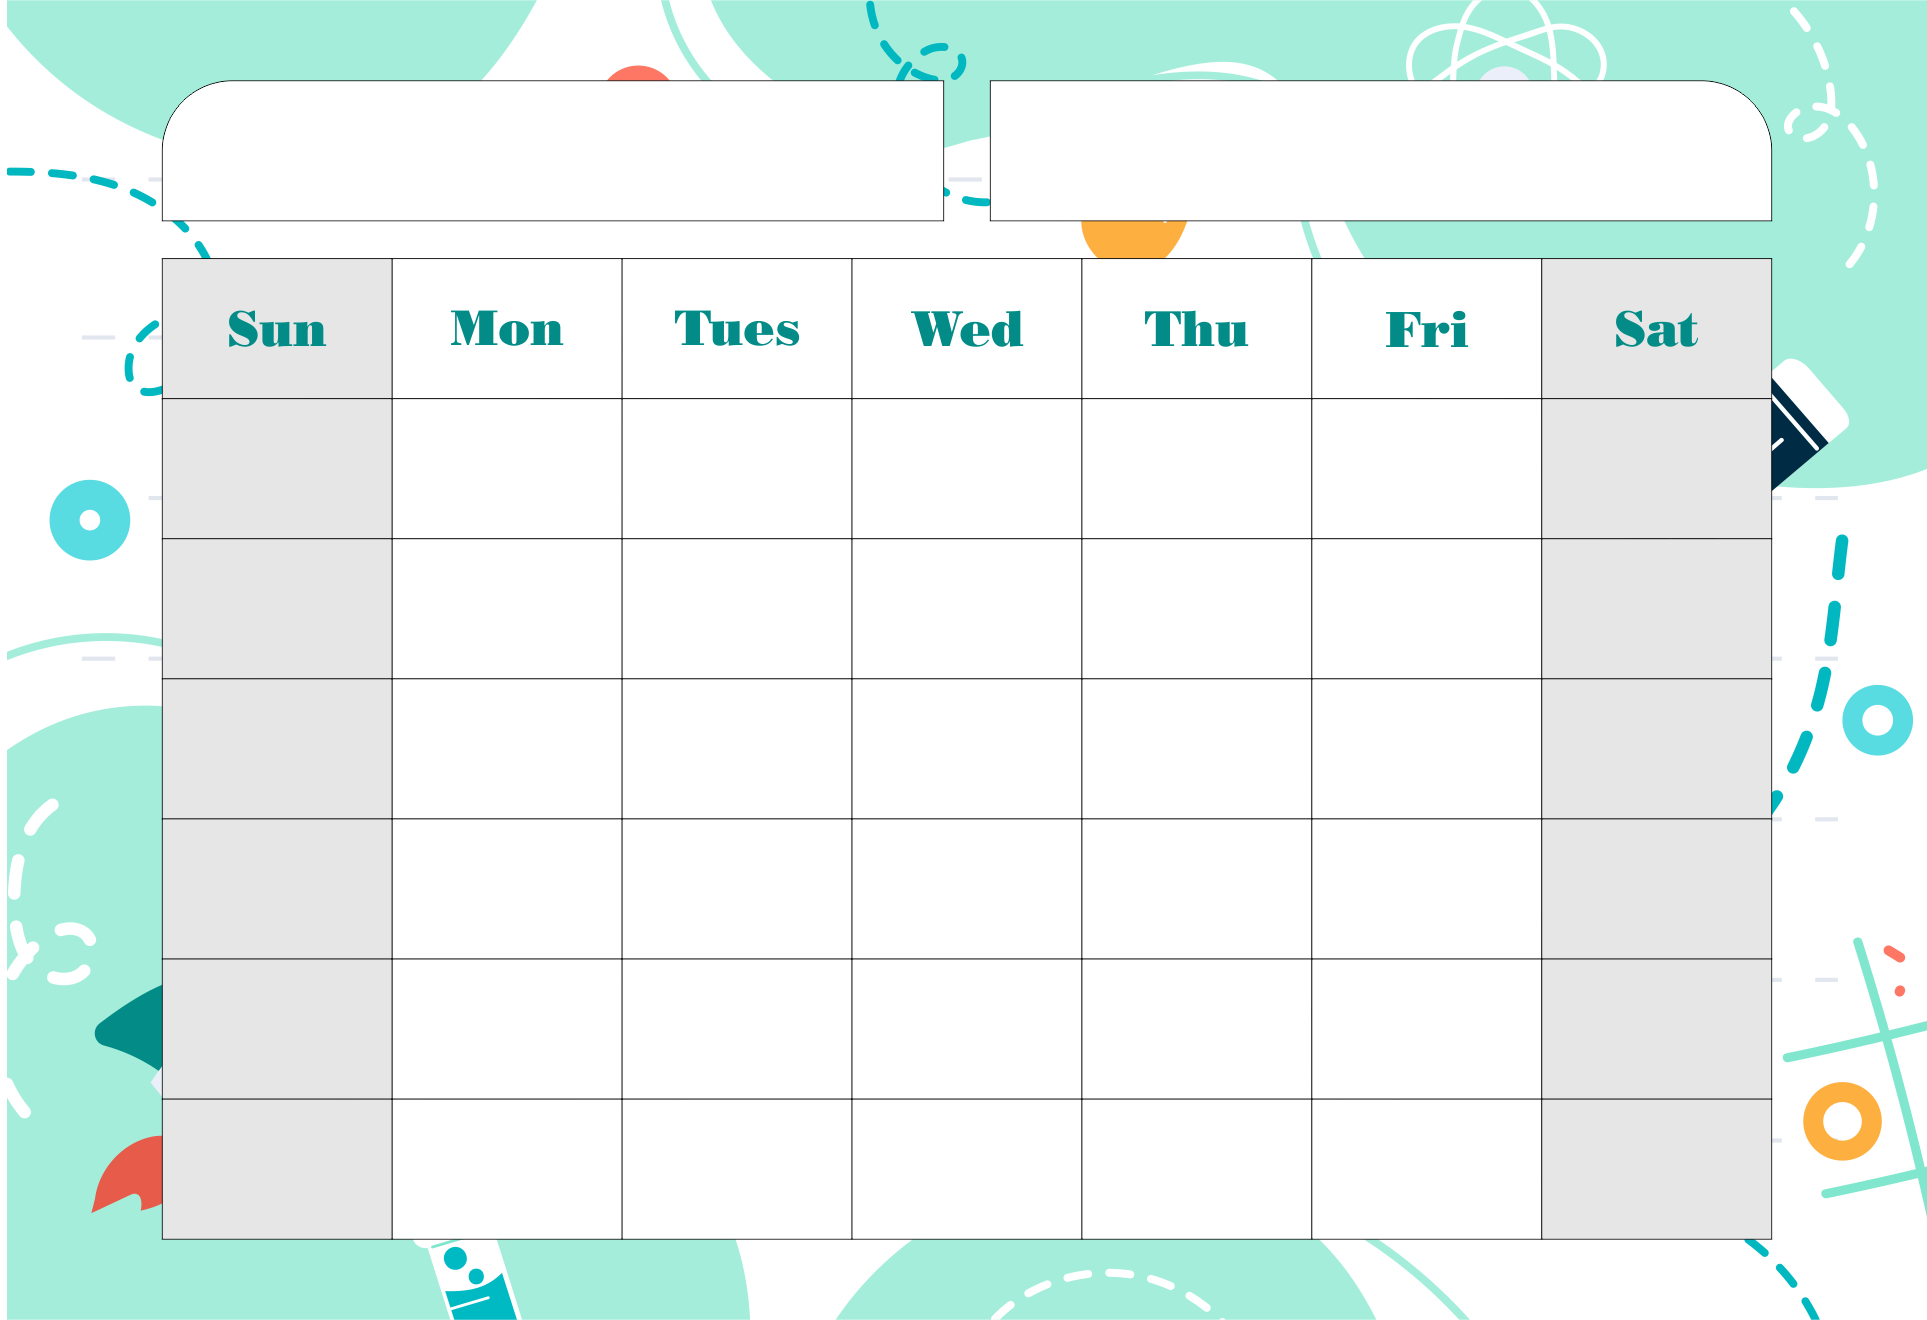 Kindergarten Monthly Calendar Printable